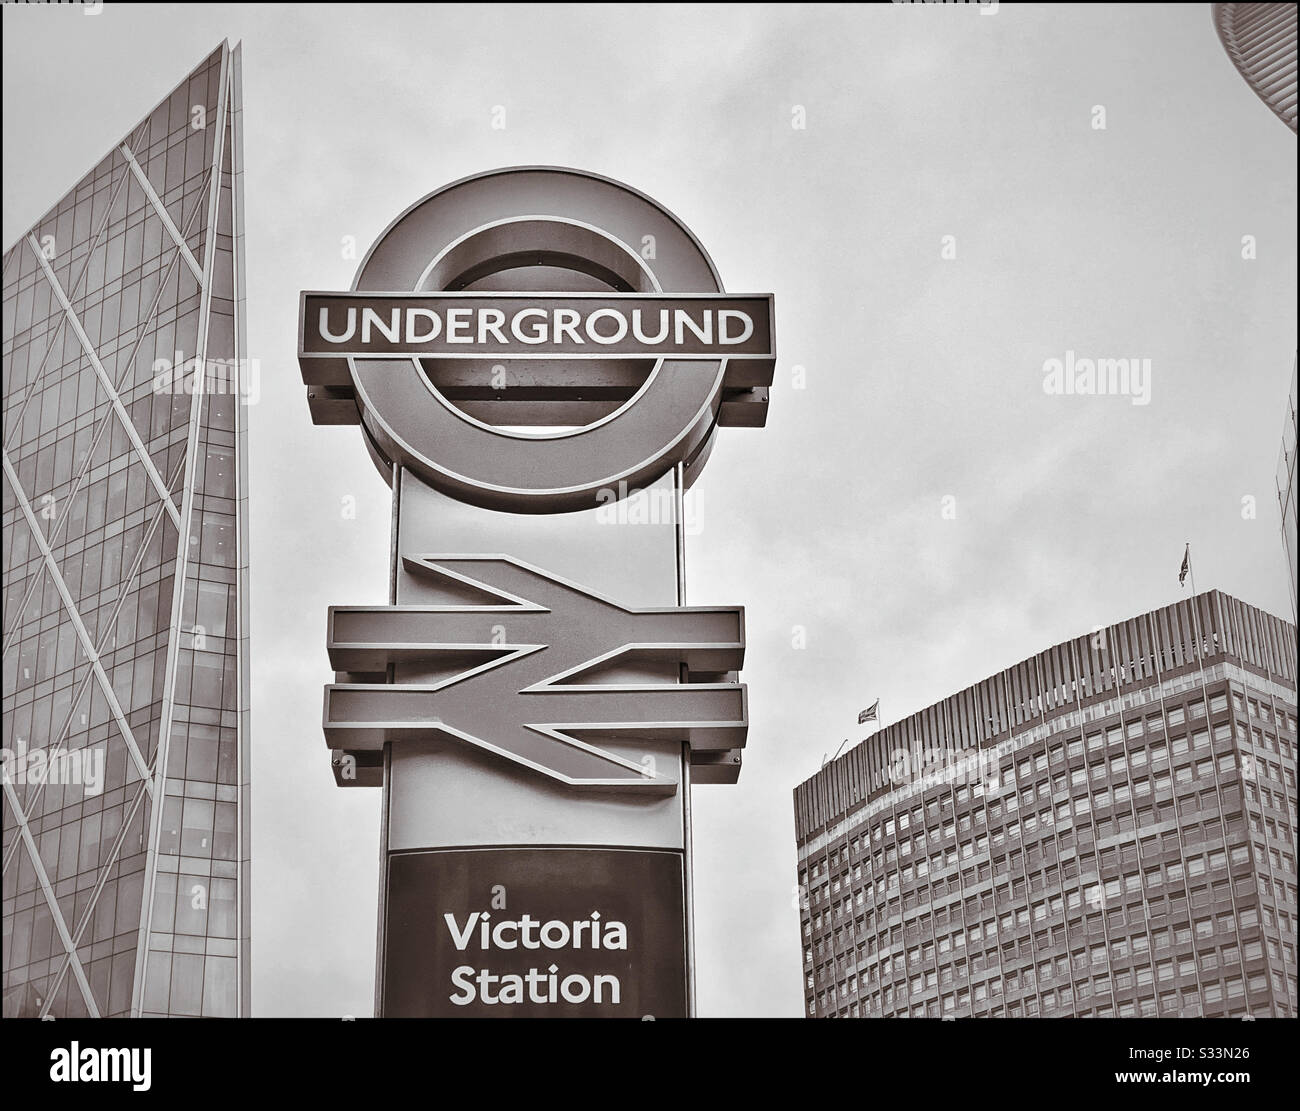 Un'immagine monocromatica delle famose indicazioni della metropolitana e della British Rail di Londra alla stazione Victoria. Foto di credito - © COLIN HOSKINS. Foto Stock